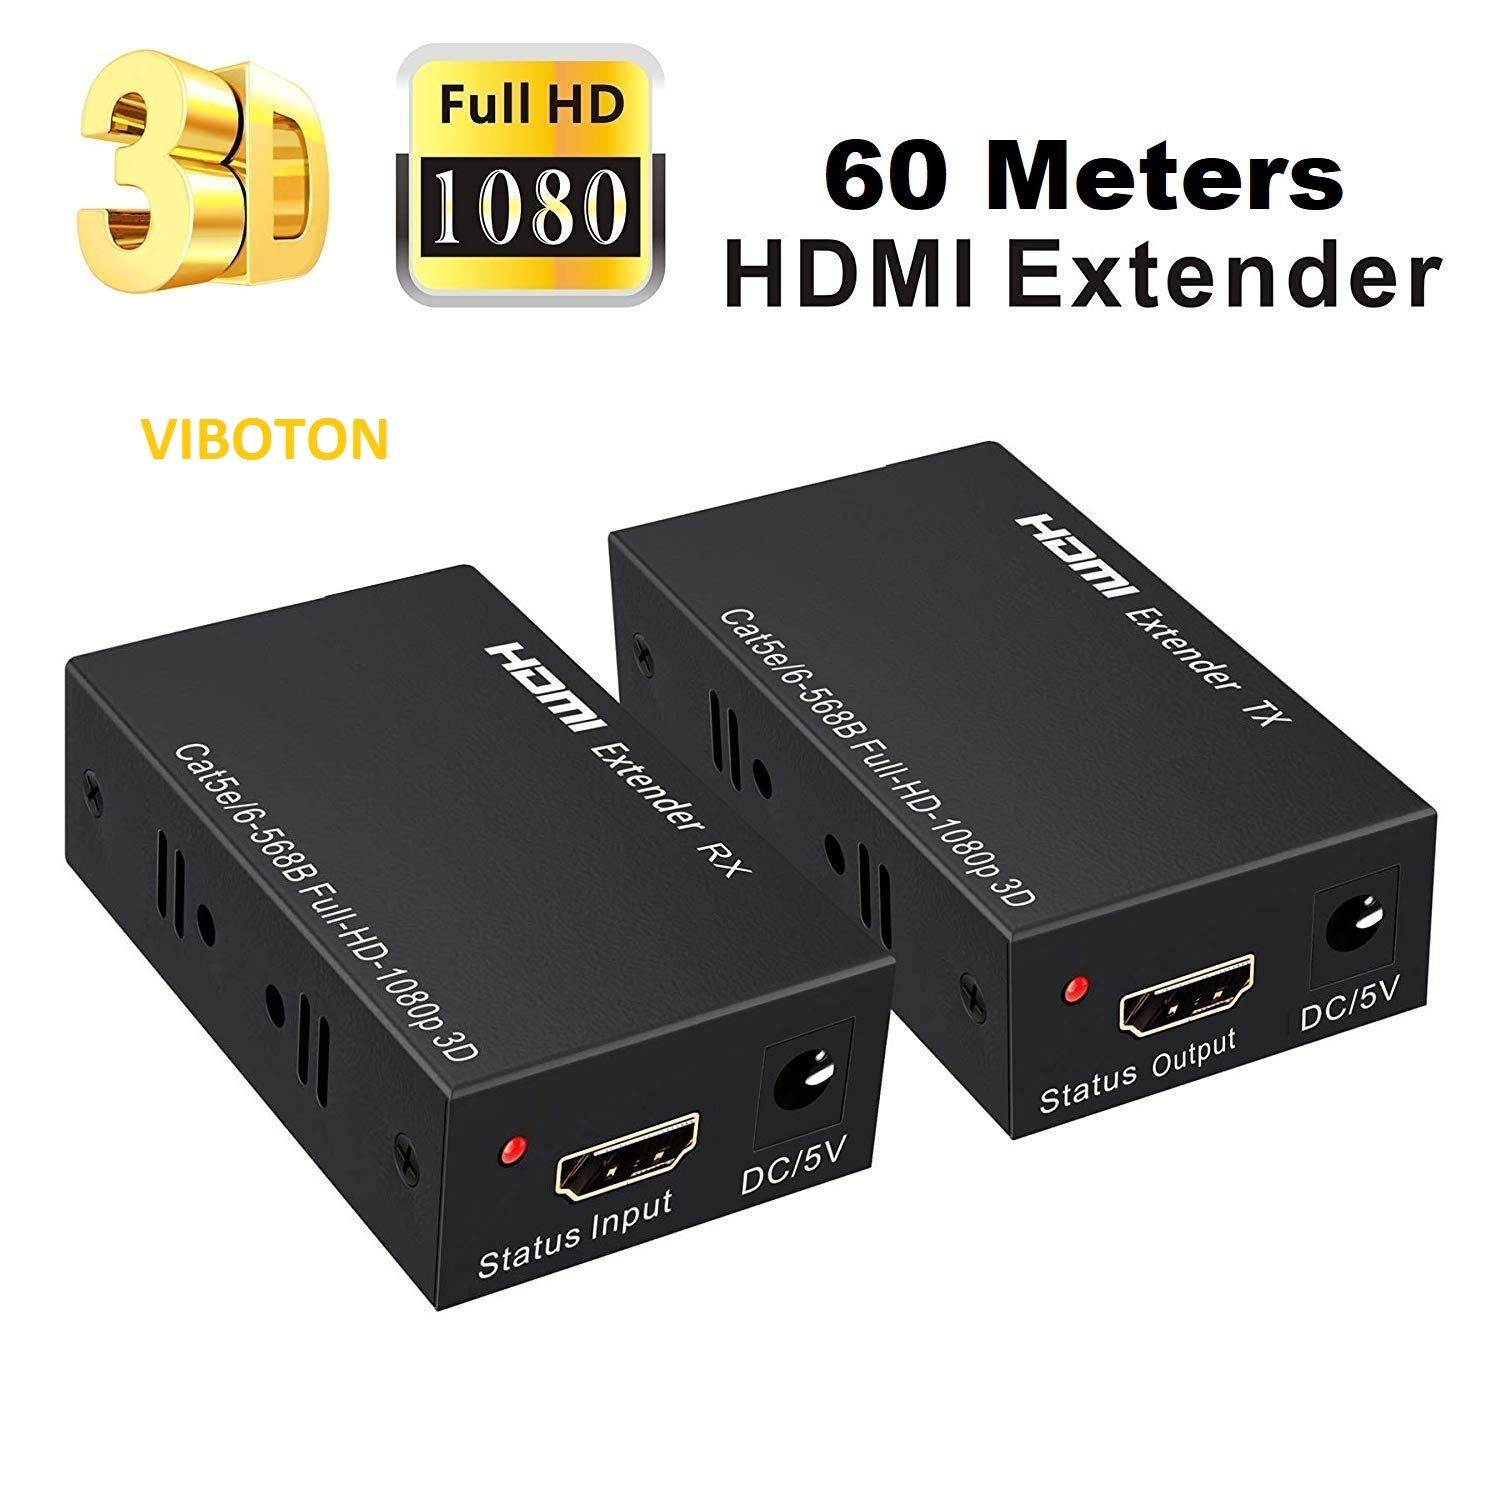 Conector Hdmi Extender Cat5e Cat6 Rj45 Extensor 60 Mts Hd 1080p 3D